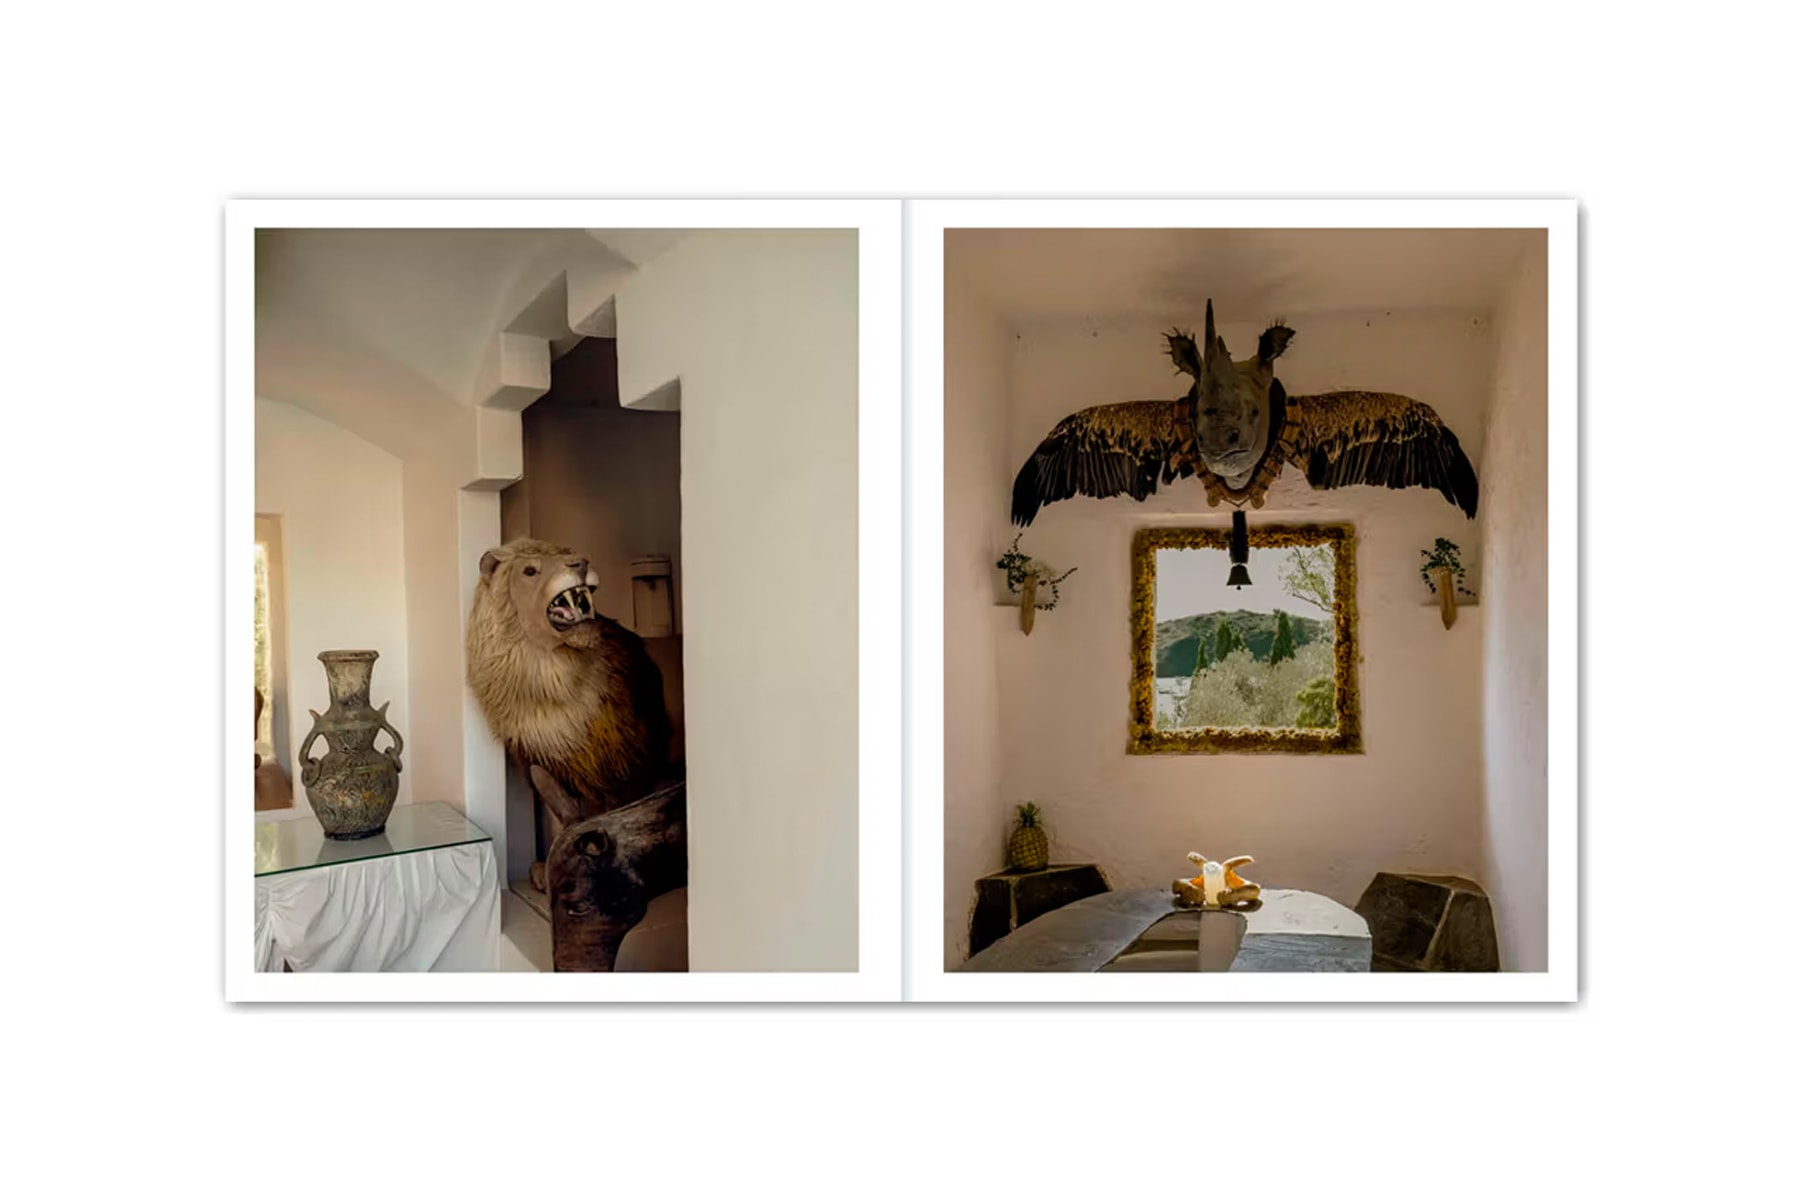 室內設計雜誌 Apartamento 全新書籍完整展示 Salvador Dalí 達利住宅樣貌